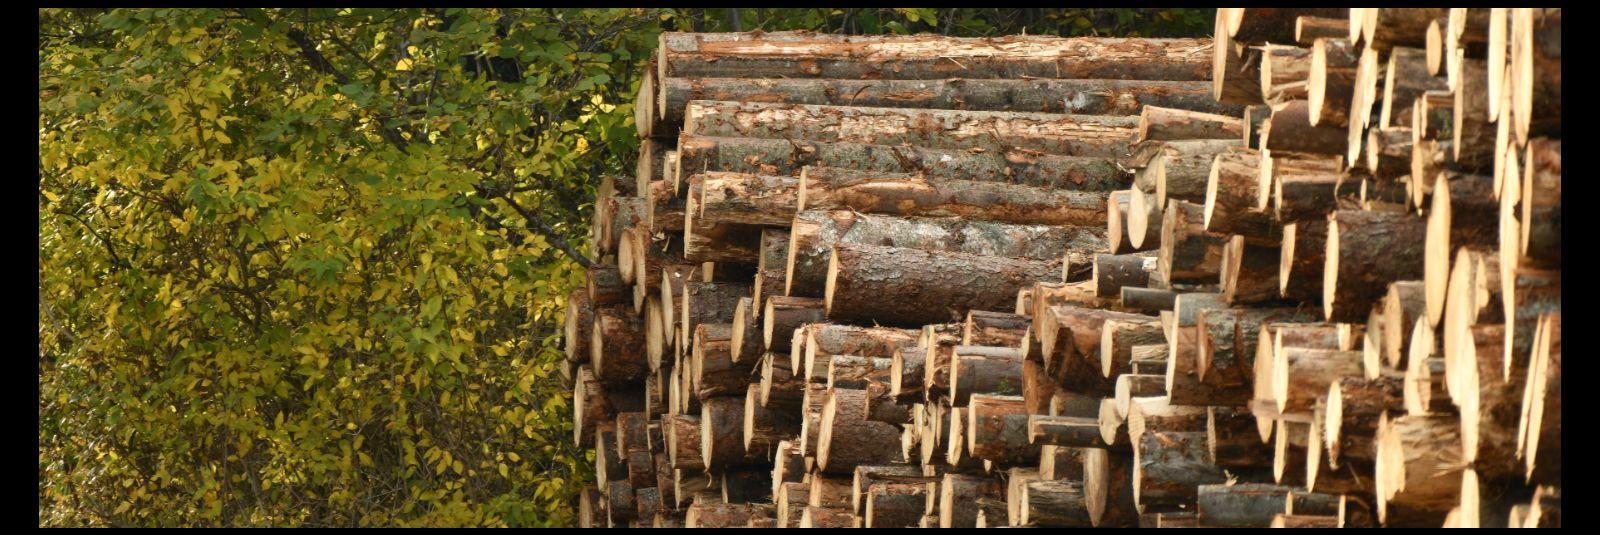 Saematerjali töötlemine on oluline samm saematerjali tootmise protsessis, mis muudab toore puidu kvaliteetseks ehitusmaterjaliks. See protsess hõlmab mitmeid et